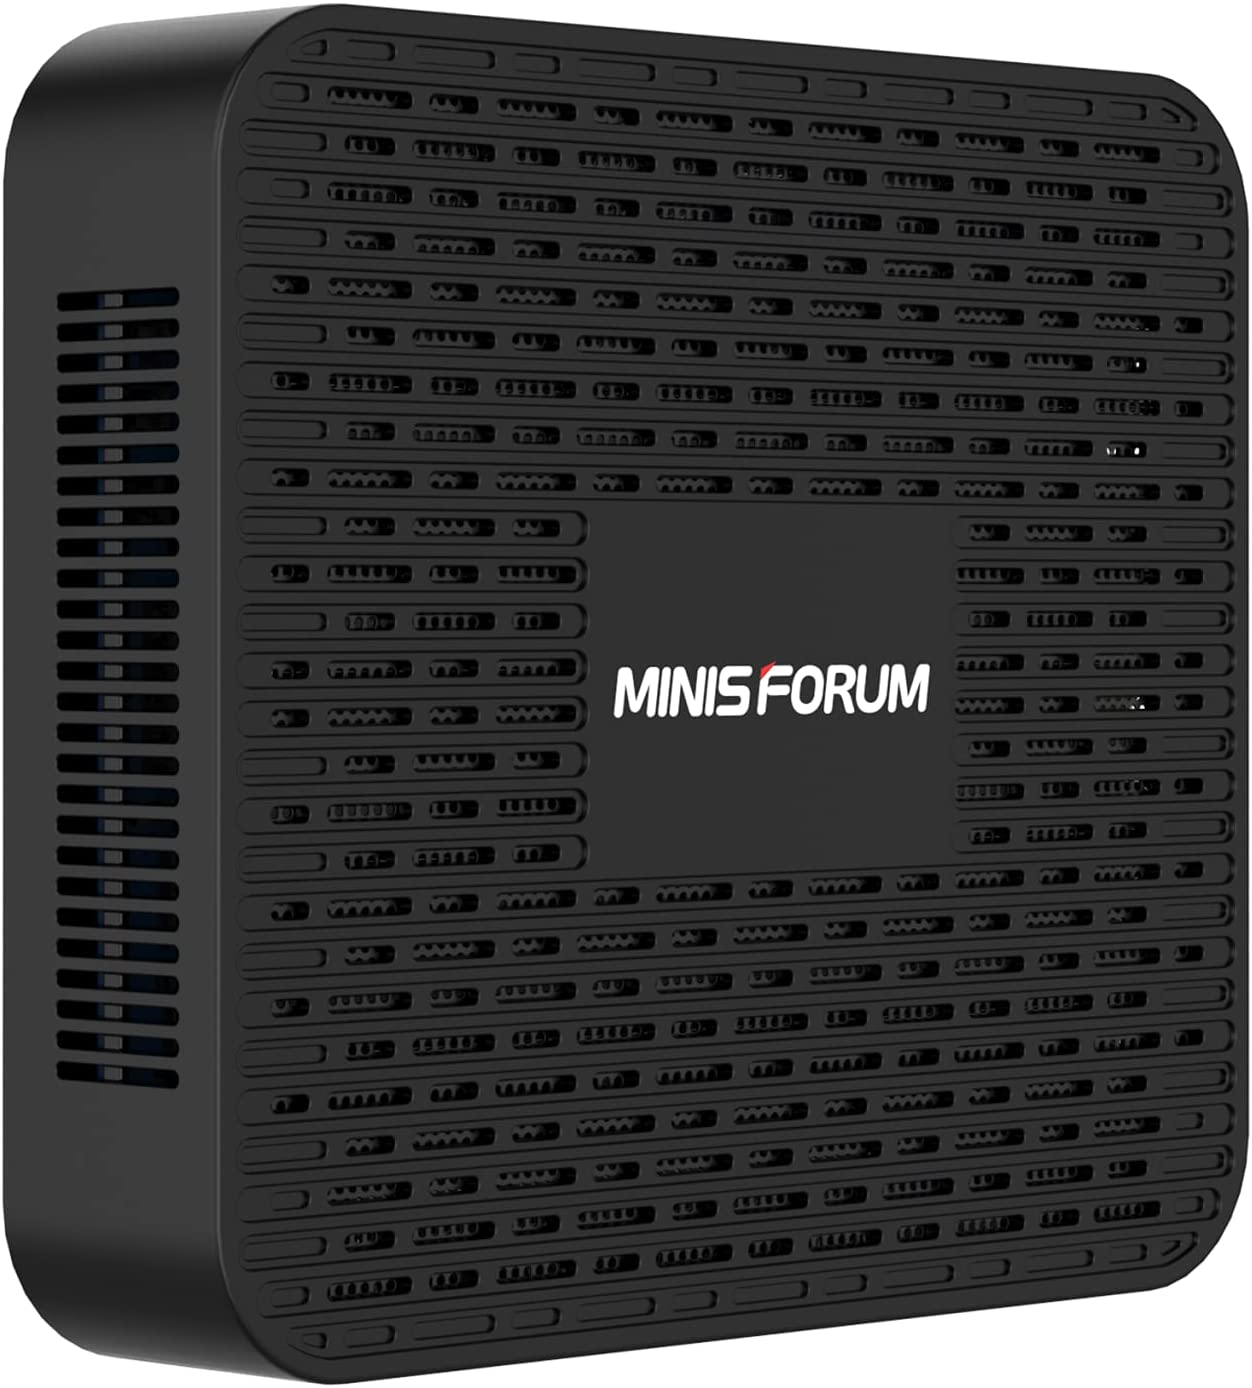 MINIS FORUM Mini PC J4125